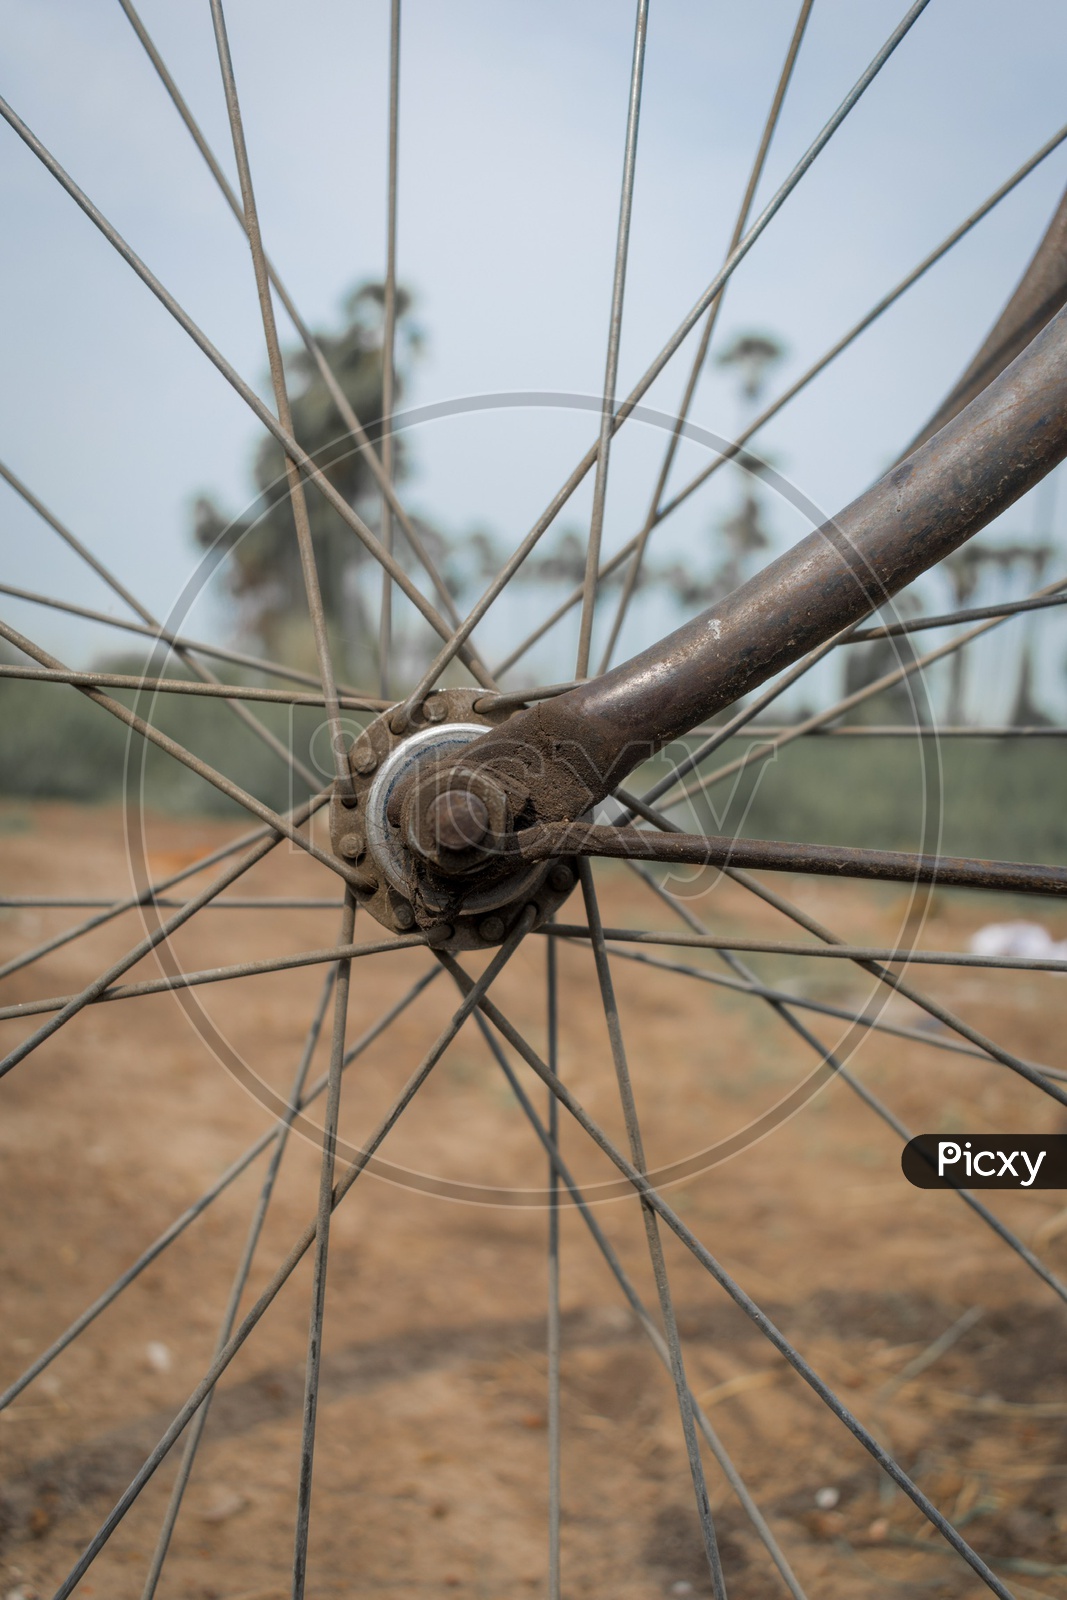 Old rusty vintage bicycle wheel spoke